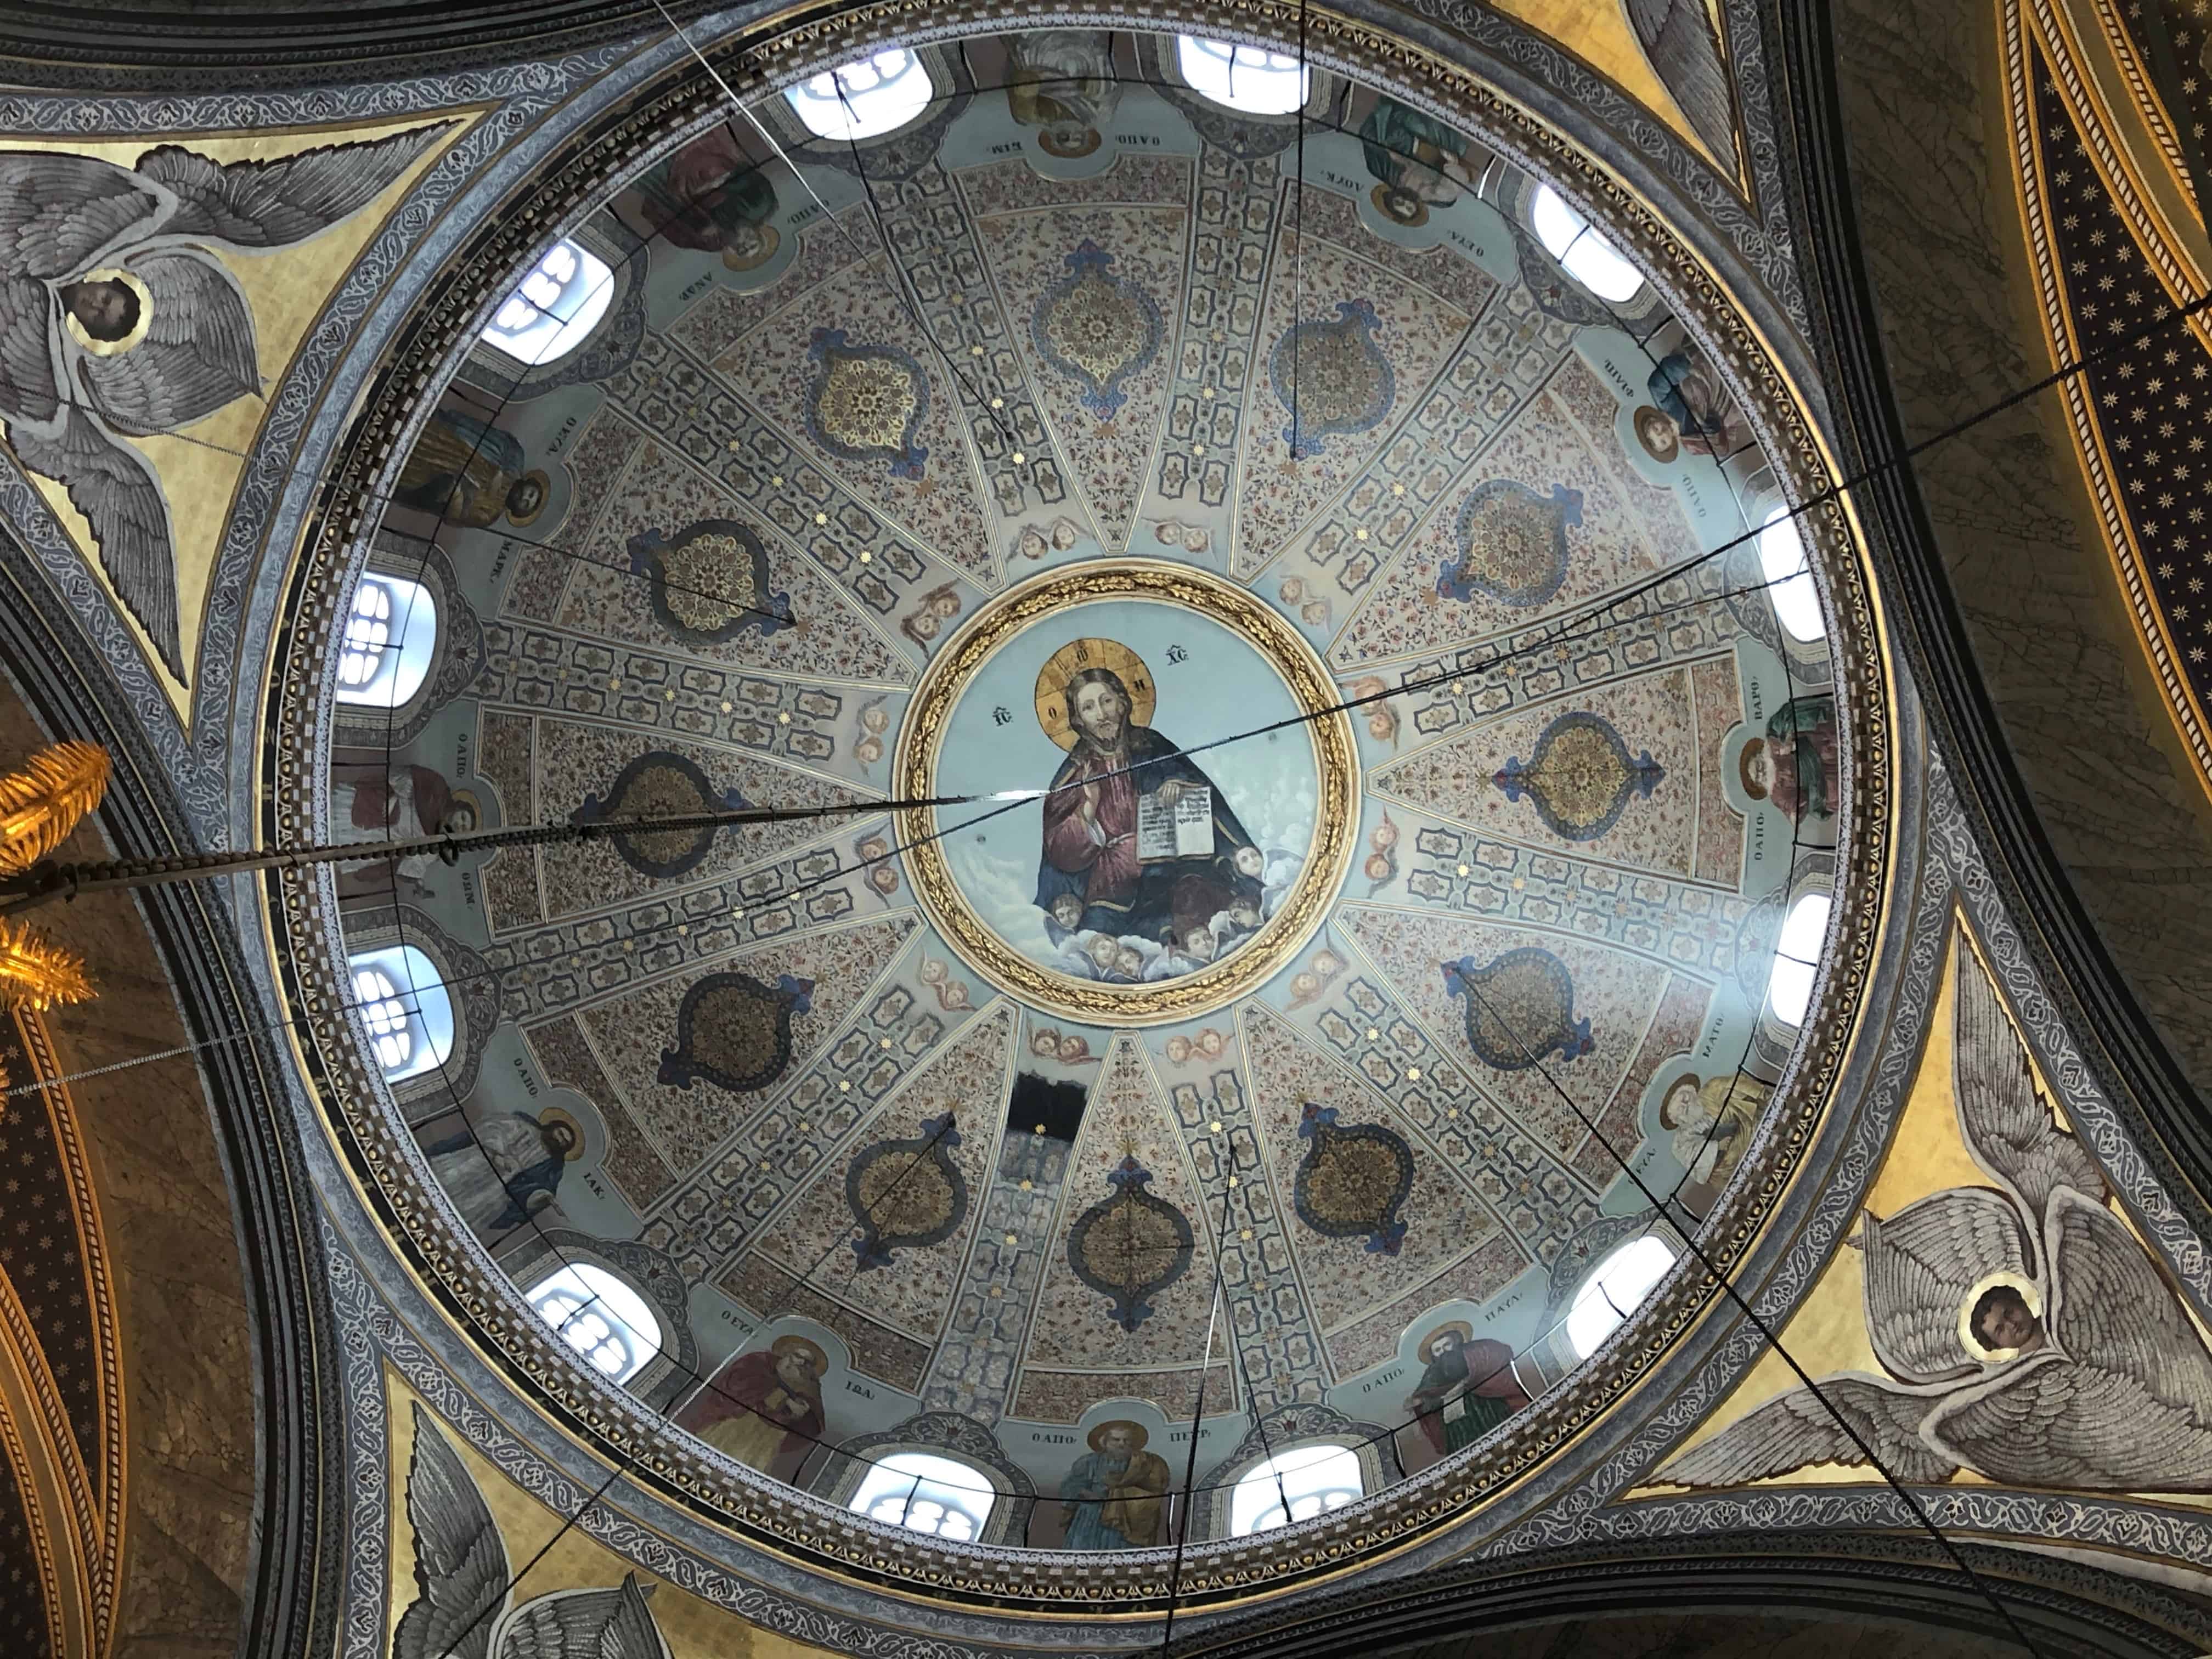 Dome of Agia Triada Greek Orthodox Church in Istanbul, Turkey